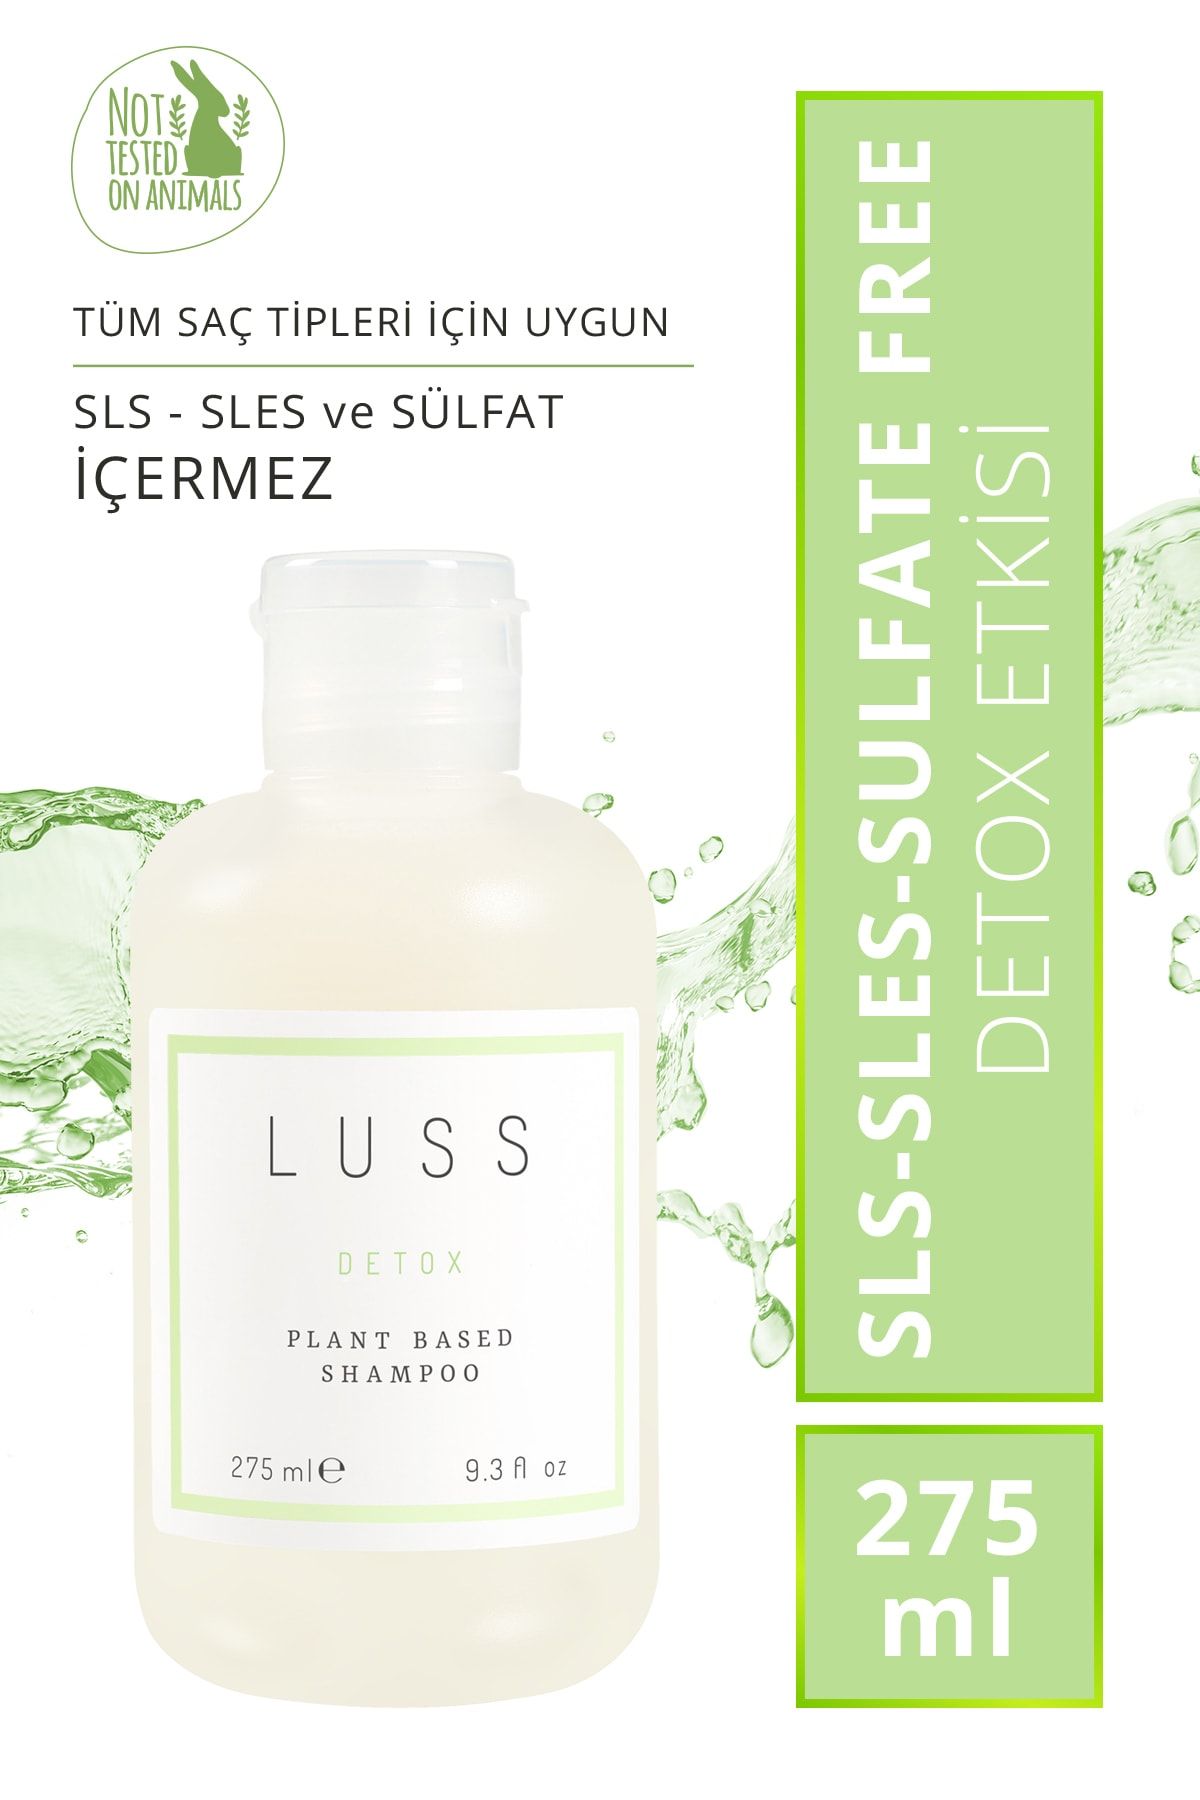 LUSS Detox Plant Based Shampoo Sls-sles Sulfate Free